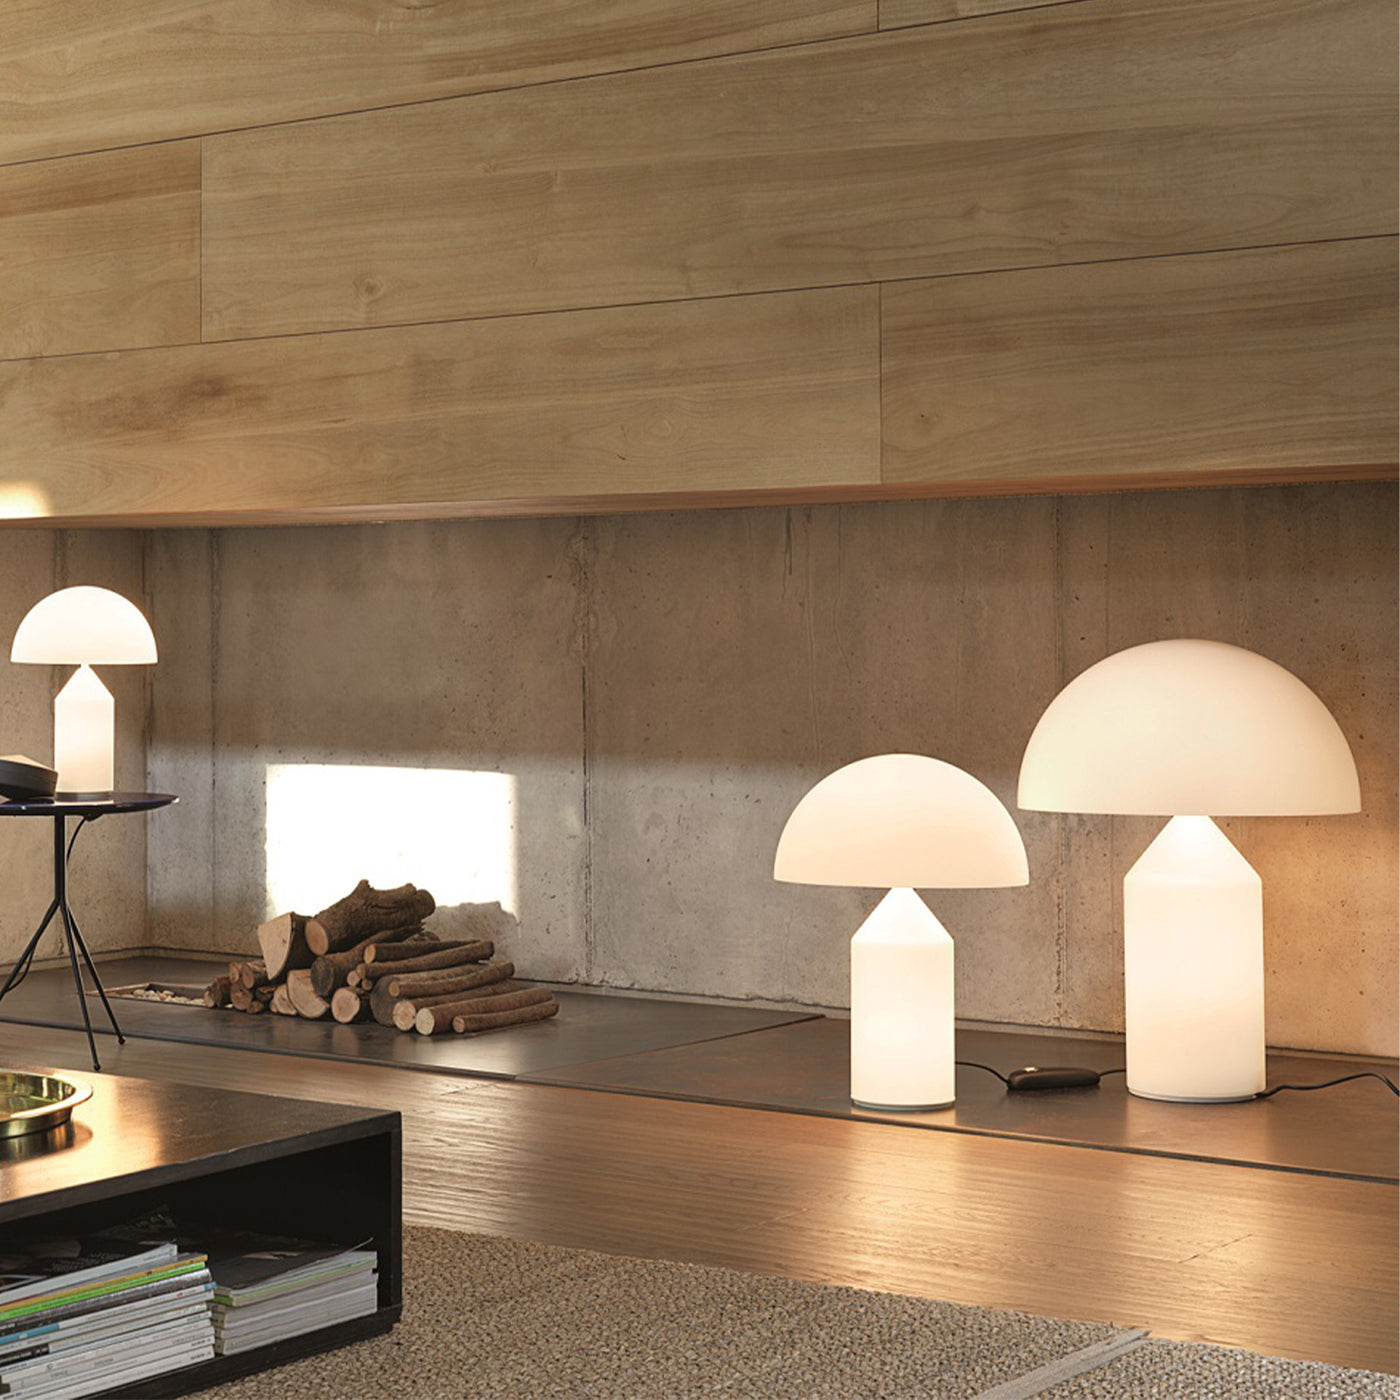 Atollo lampa, Oluce stolní lampa, moderní luxusní osvětlení, Oluce, Romein, romein concept store,